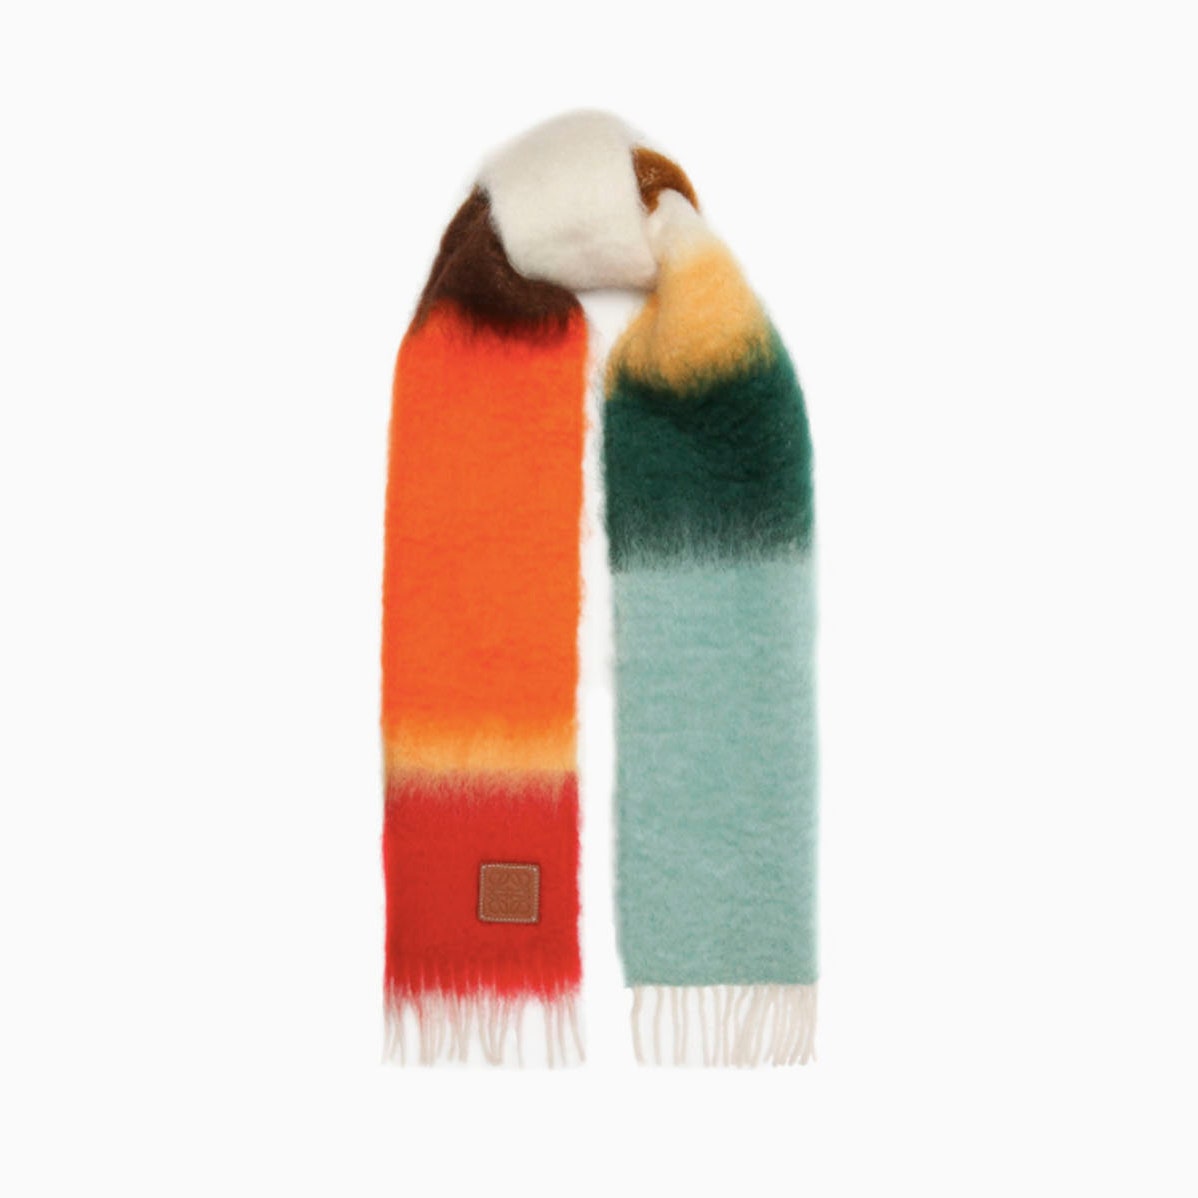 Этой осенью вам нужен яркий цветной шарф